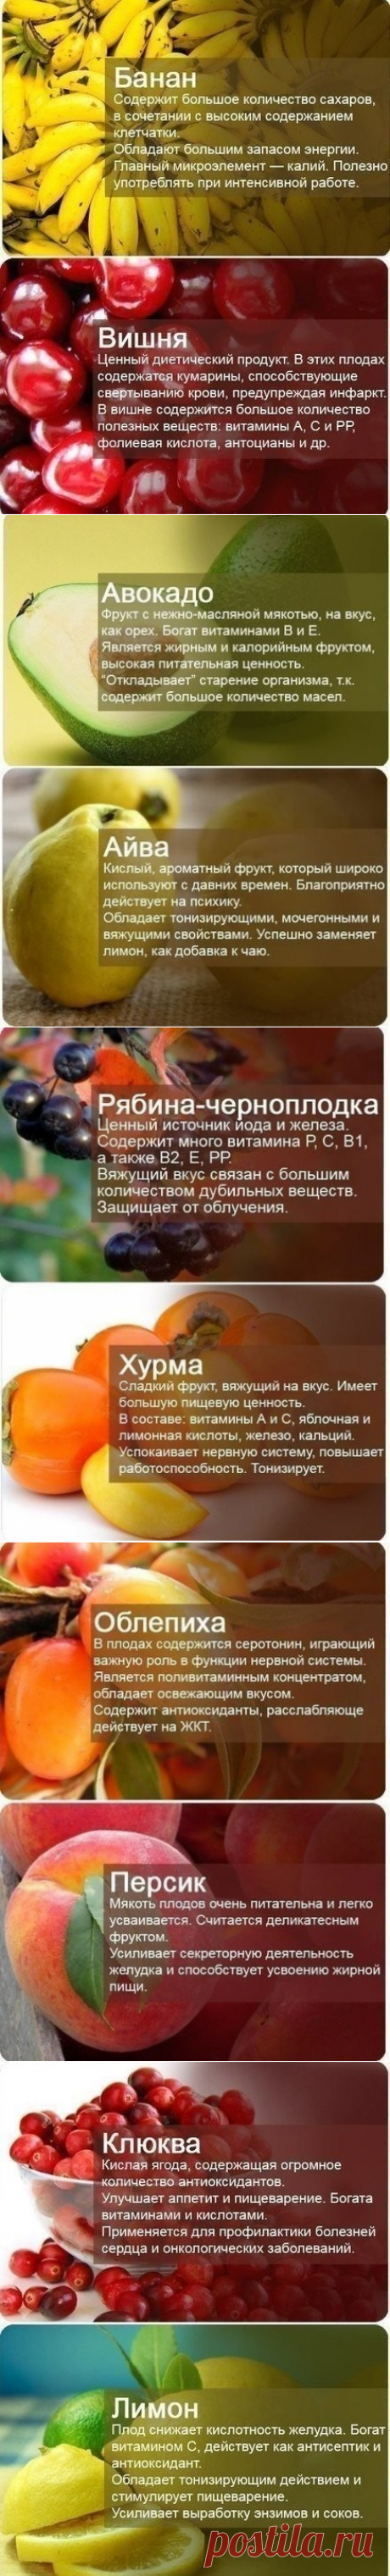 польза ягод и фруктов!